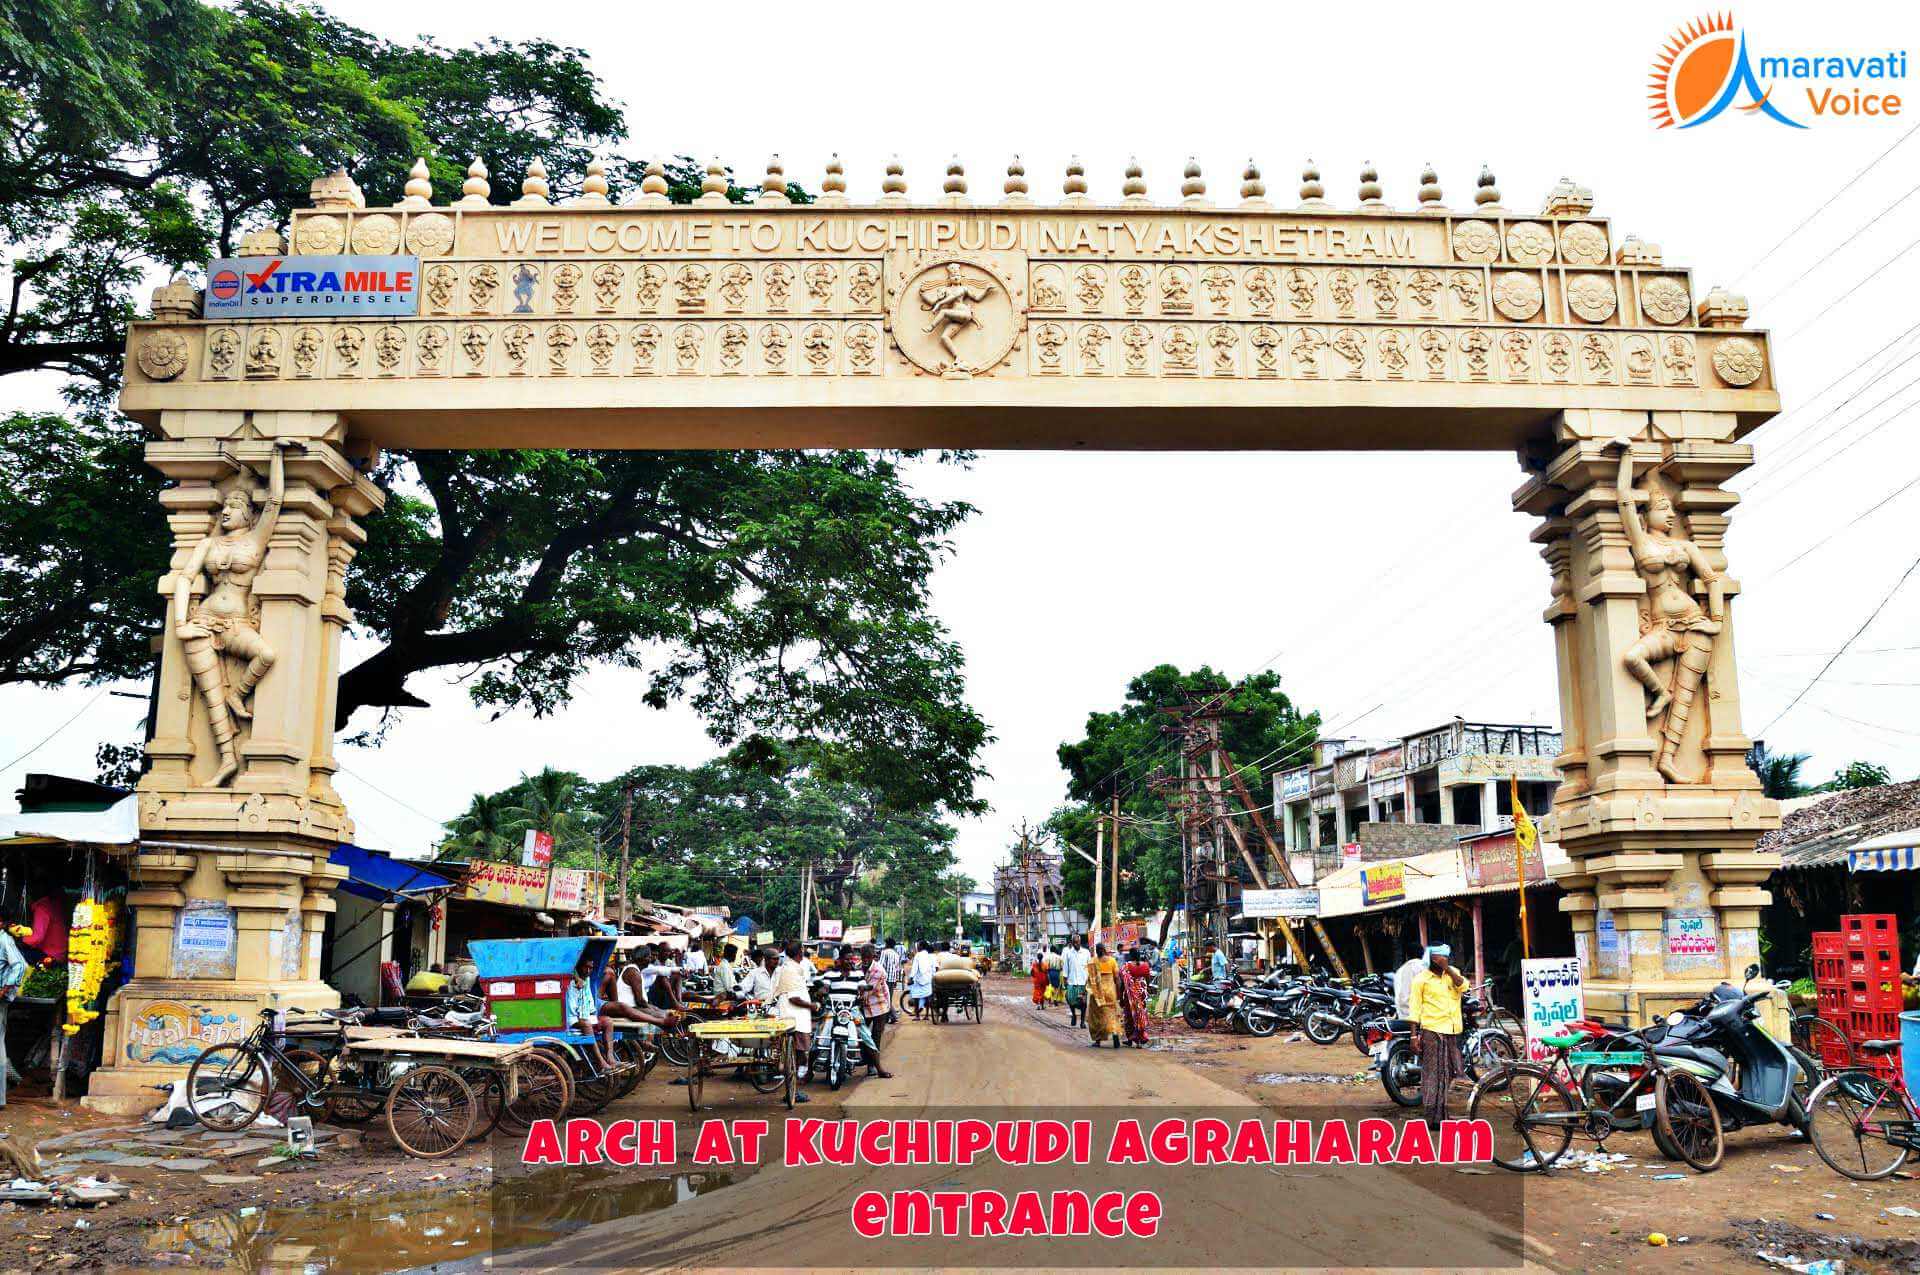 Kuchipudi Arch